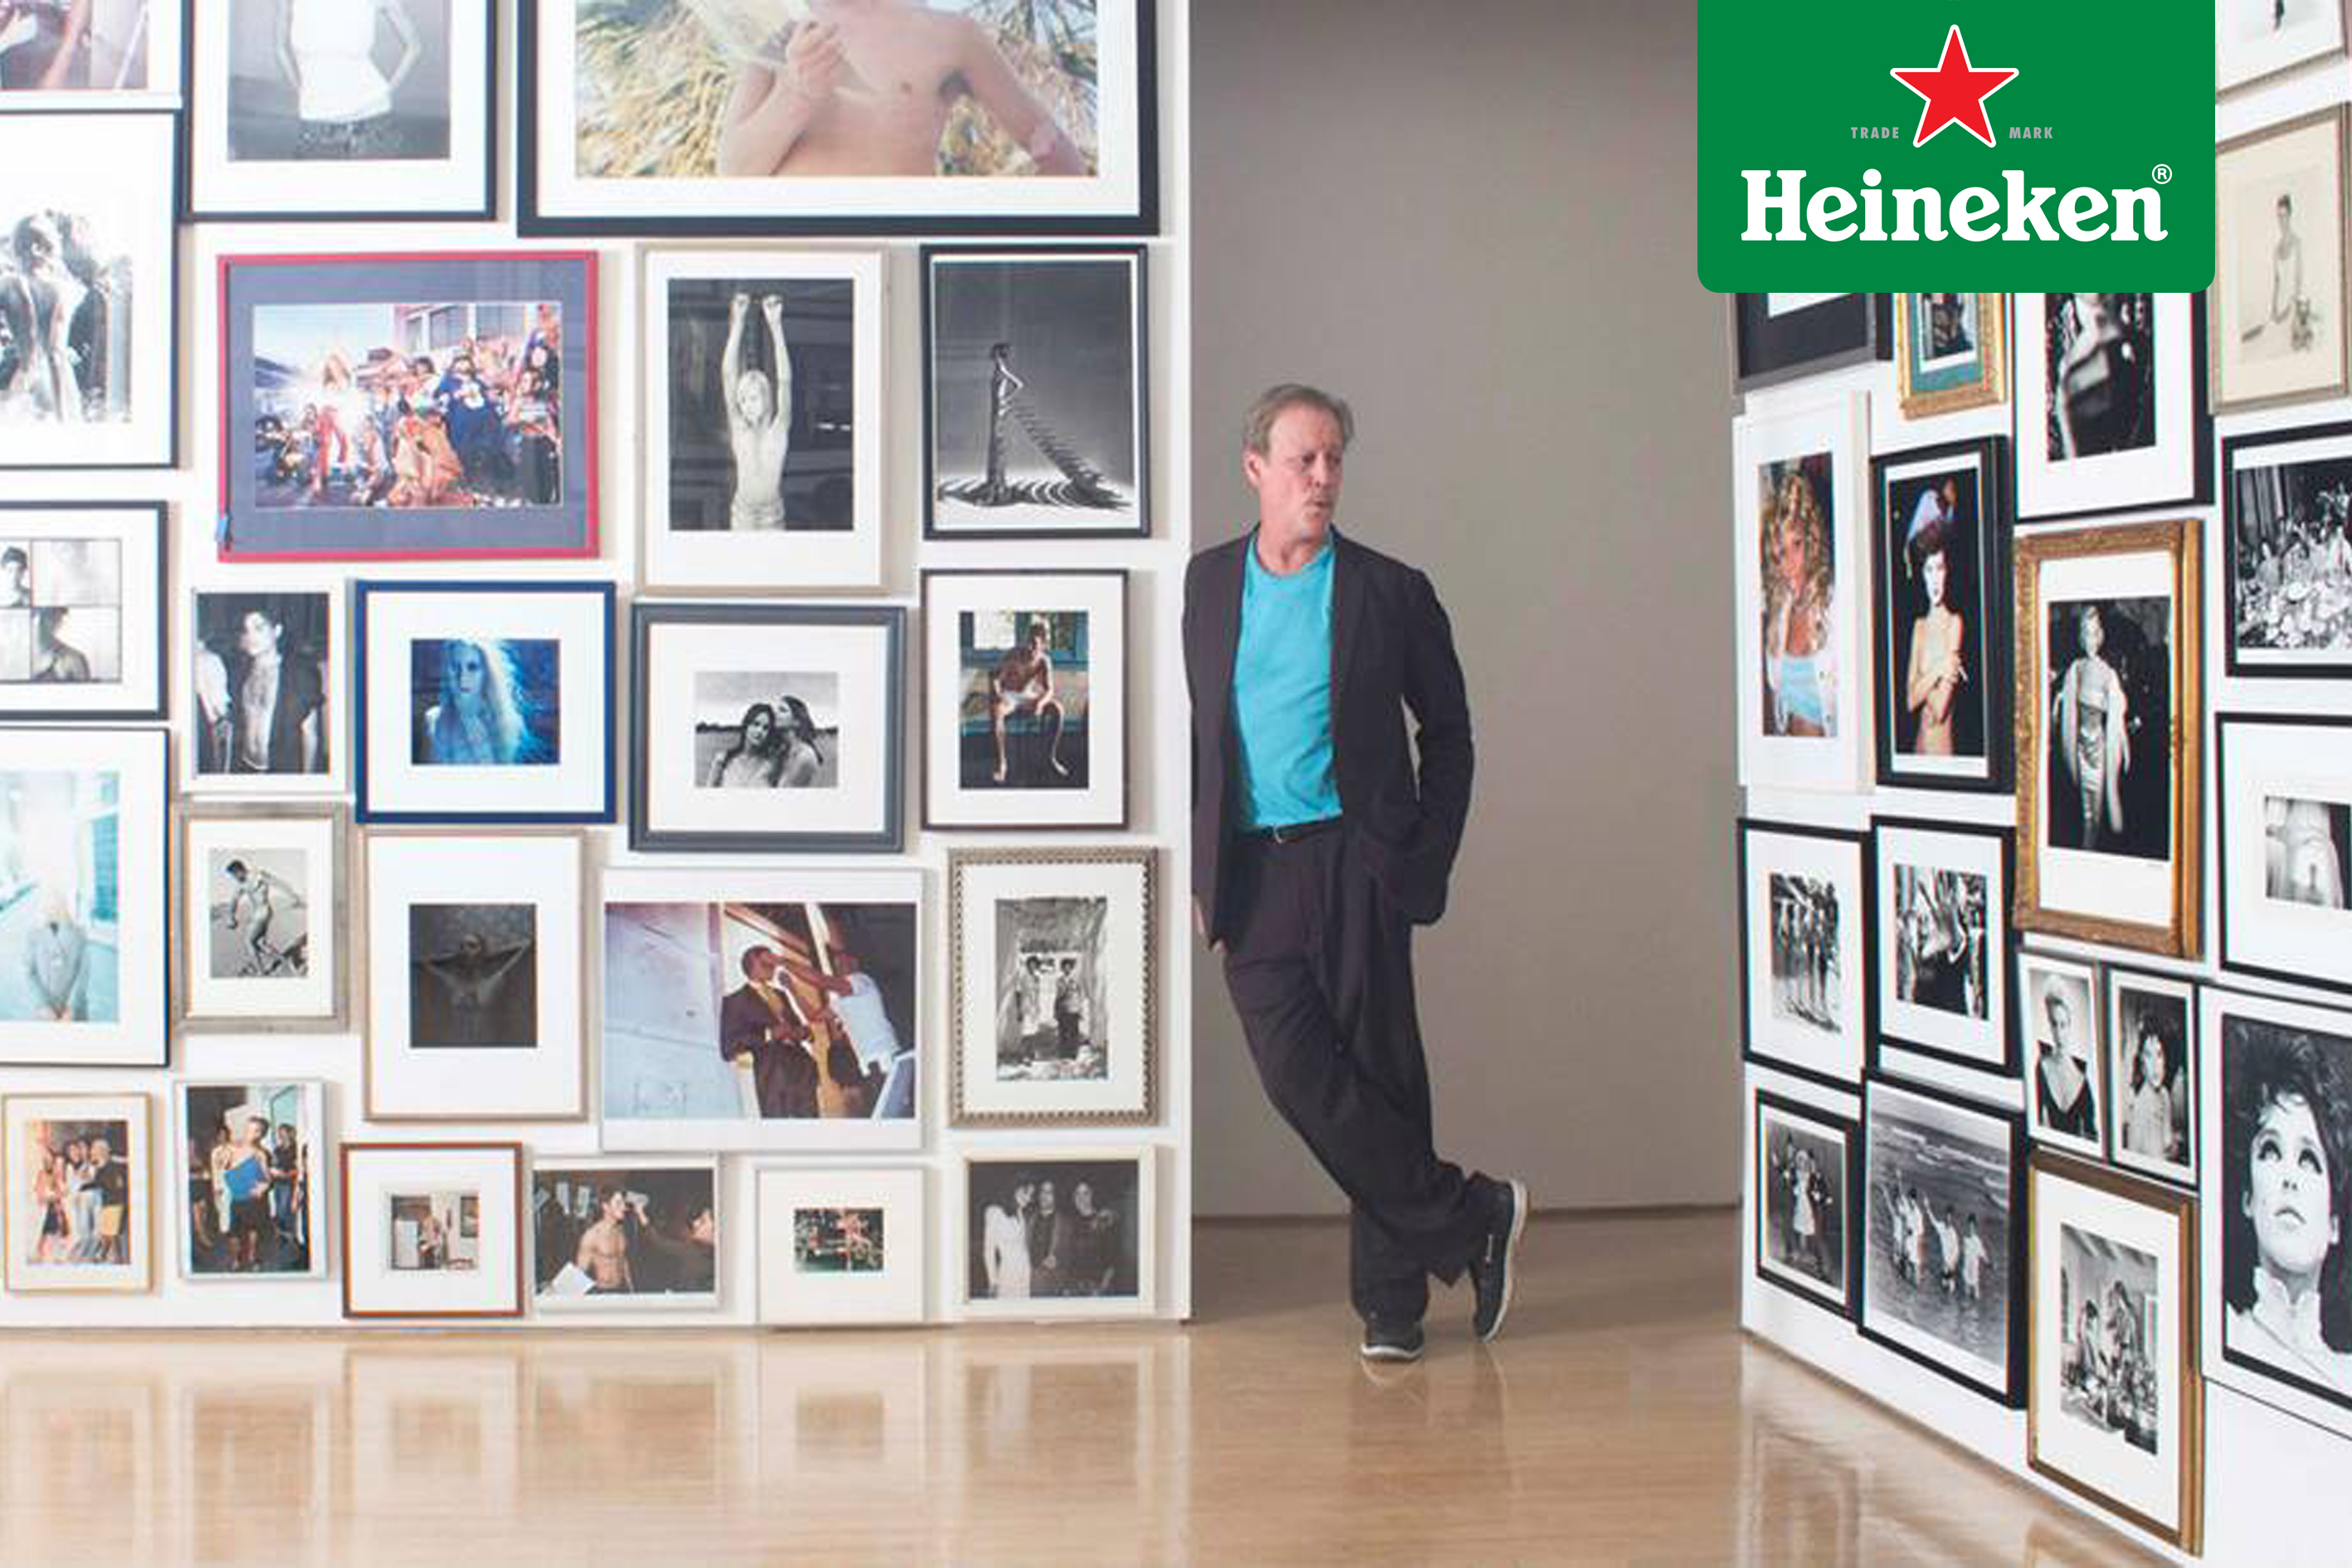 Patrick McMullan: El fotógrafo favorito de los famosos expone su colección de arte #HeinekenLife